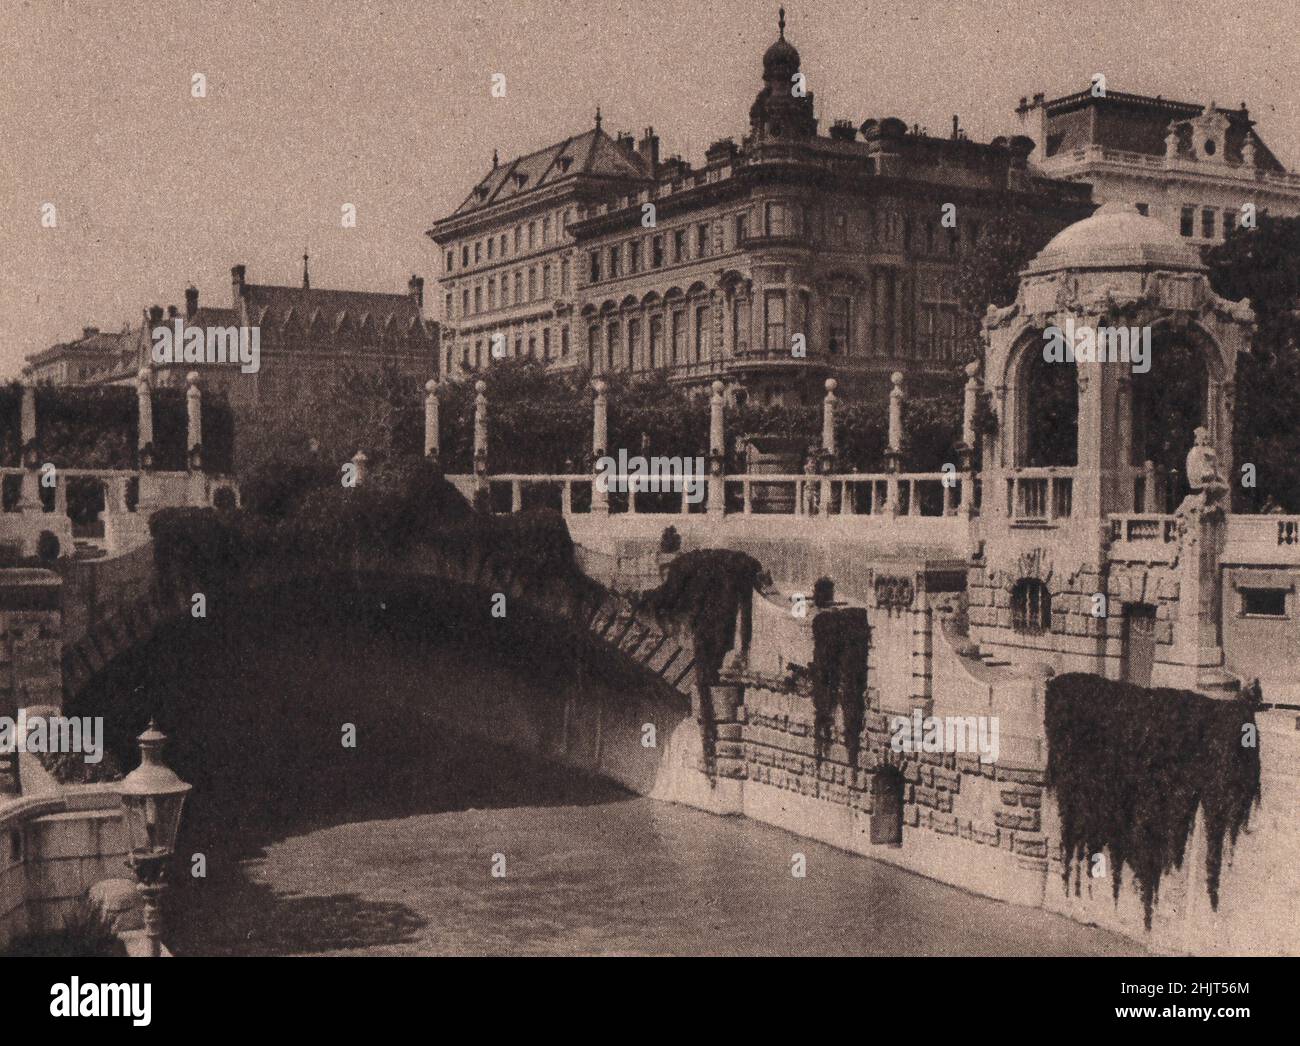 Östlich des Parkens befindet sich der beliebte Stadtpark am Kanal, der hier von dieser kriechenden, drapierten Brücke überquert wird. Österreich. Wien (1923) Stockfoto